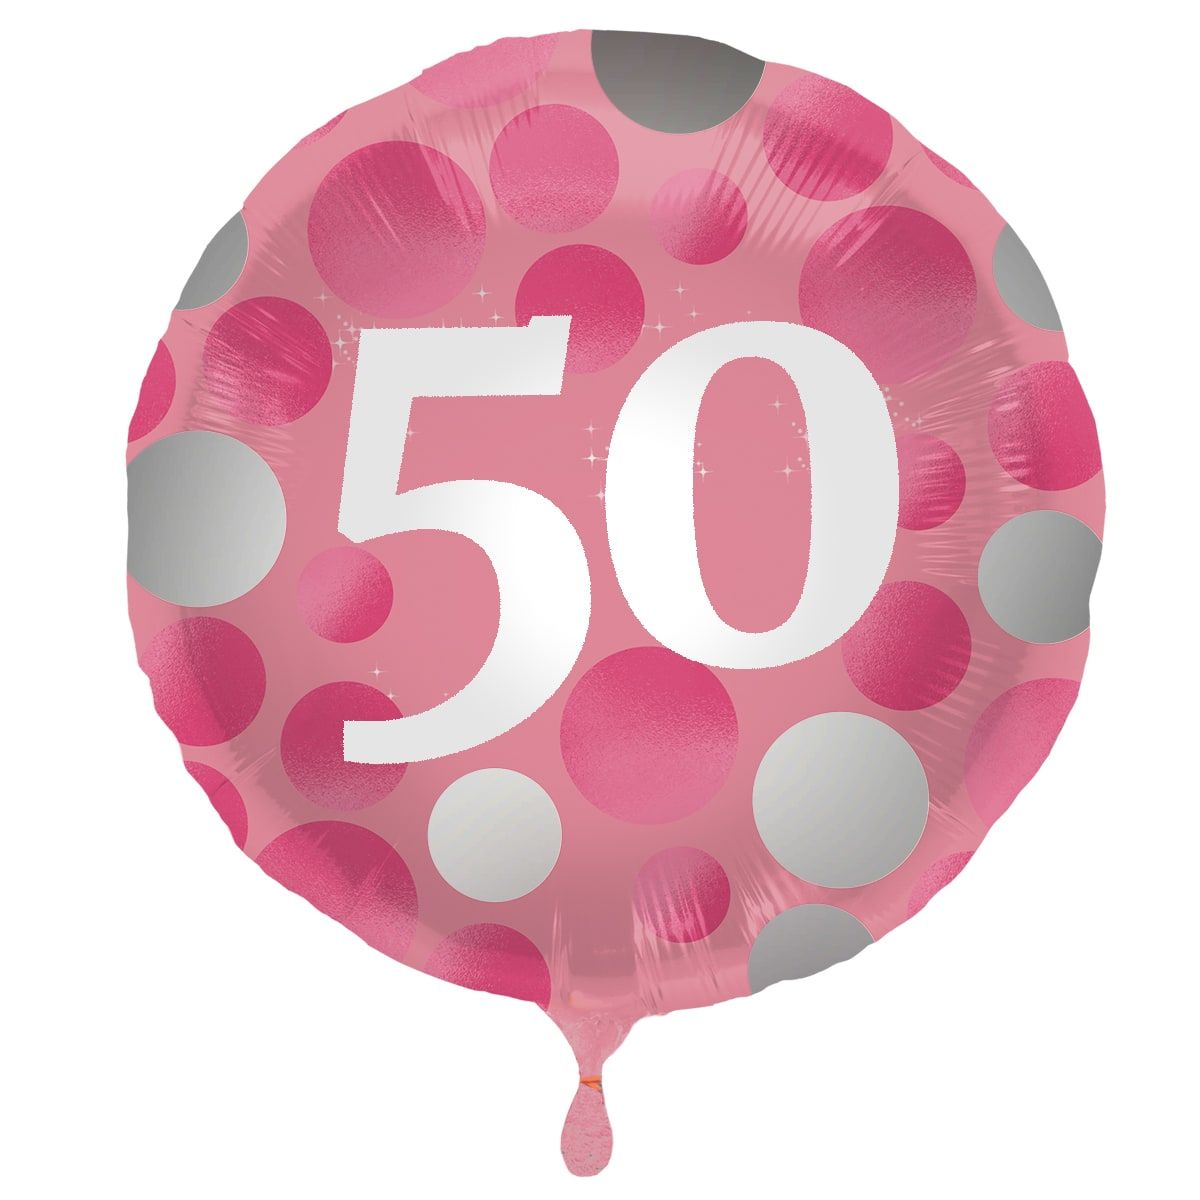 Folieballon glossy 50 happy birthday roze